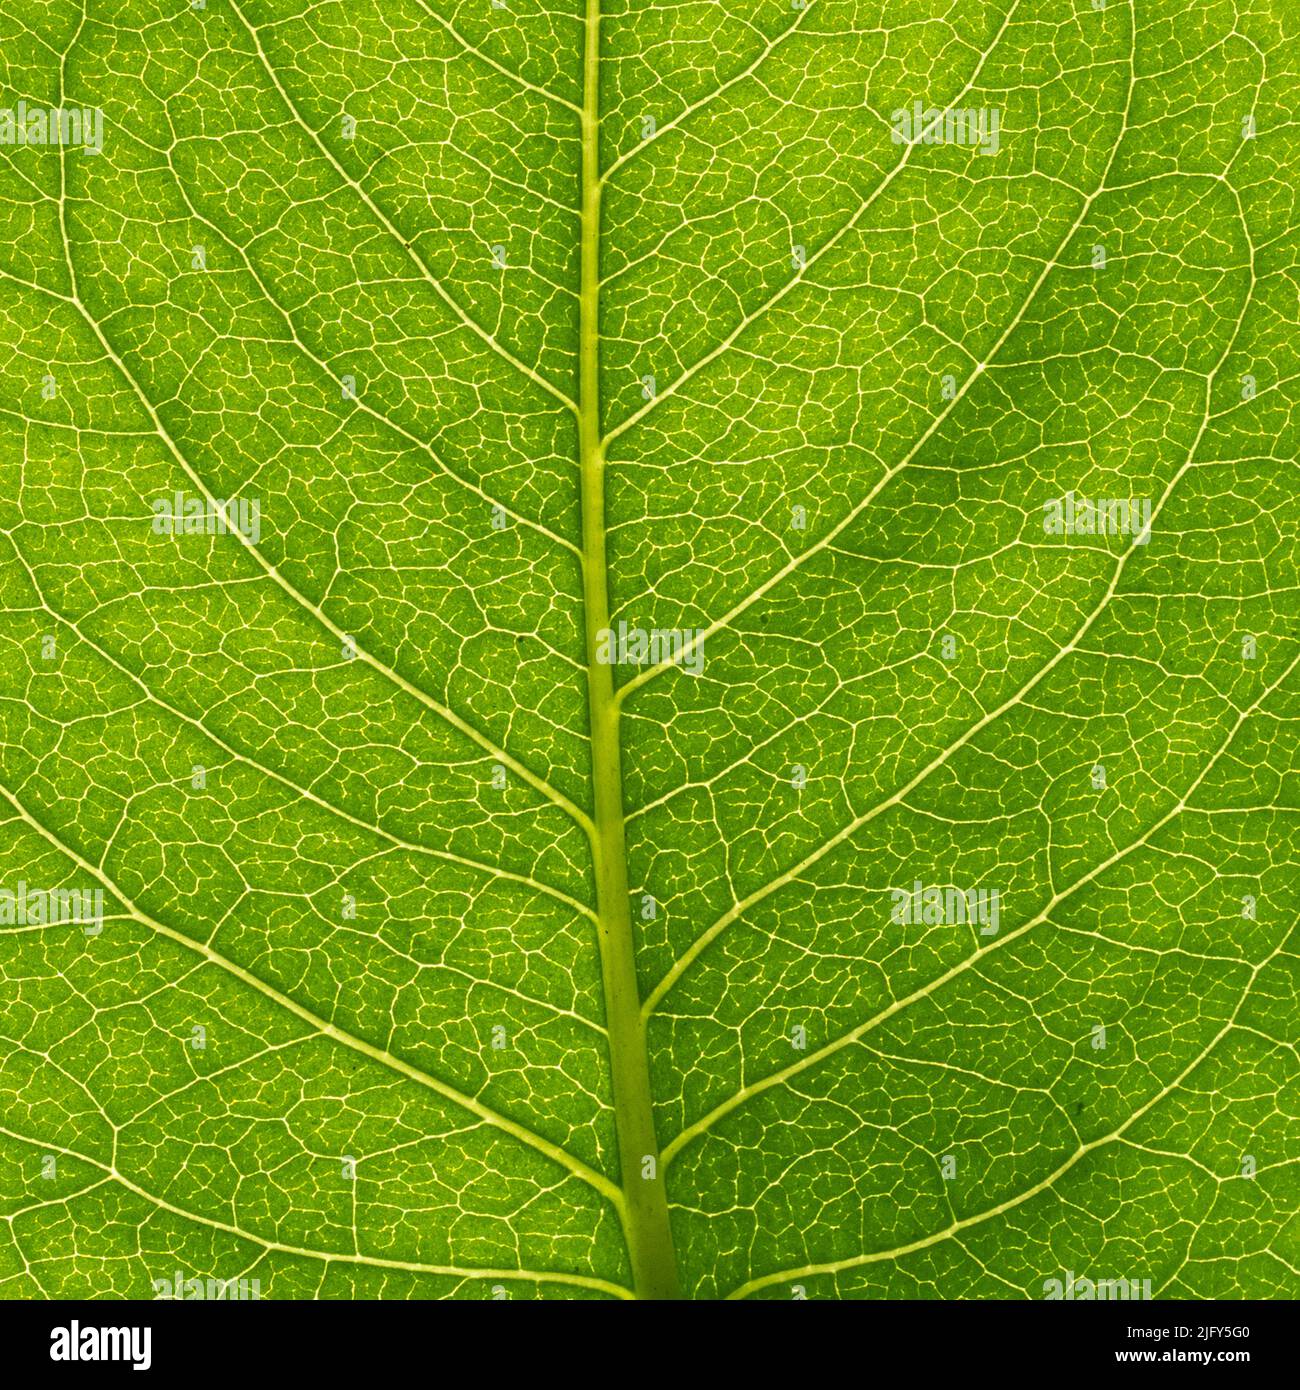 Vue macro de la feuille verte avec nervures Banque D'Images